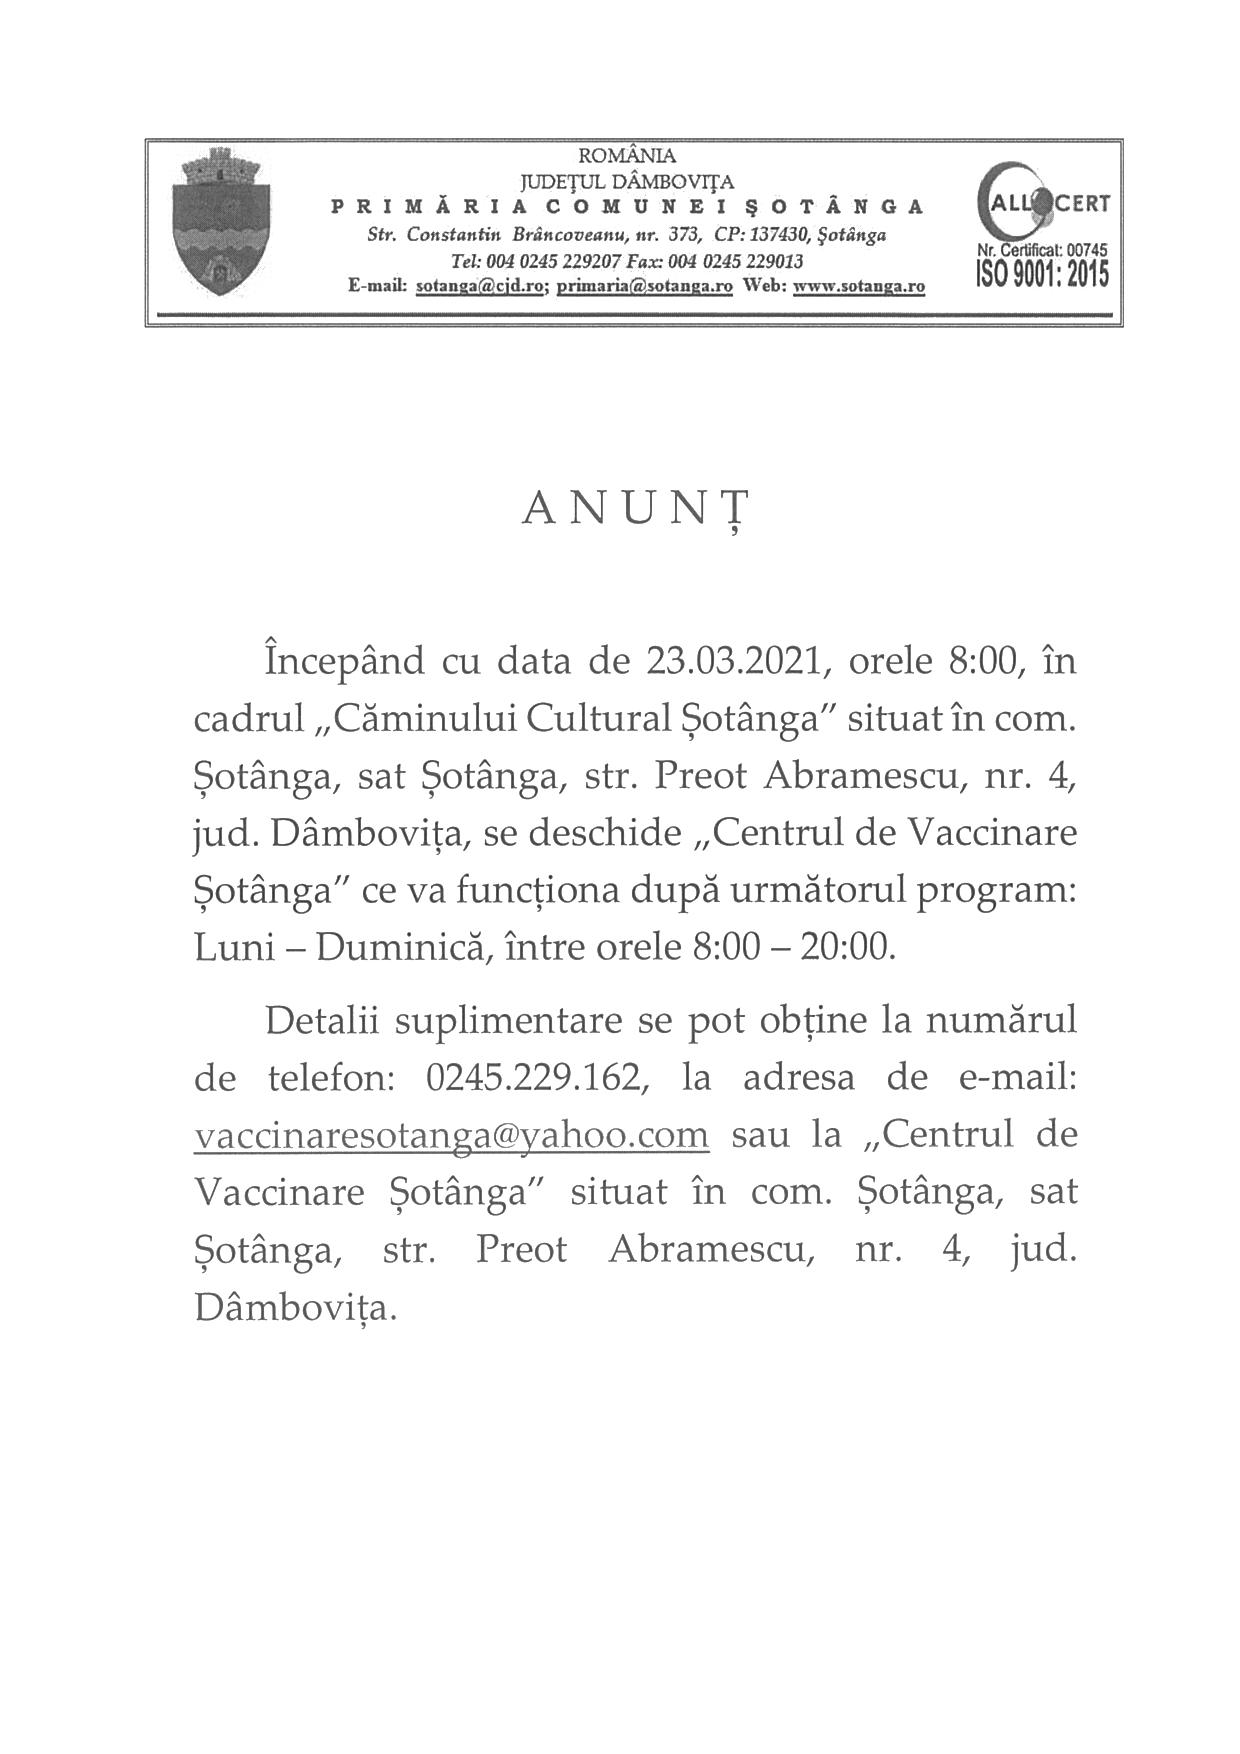 Anunț privind deschiderea Centrului de Vaccinare Șotânga